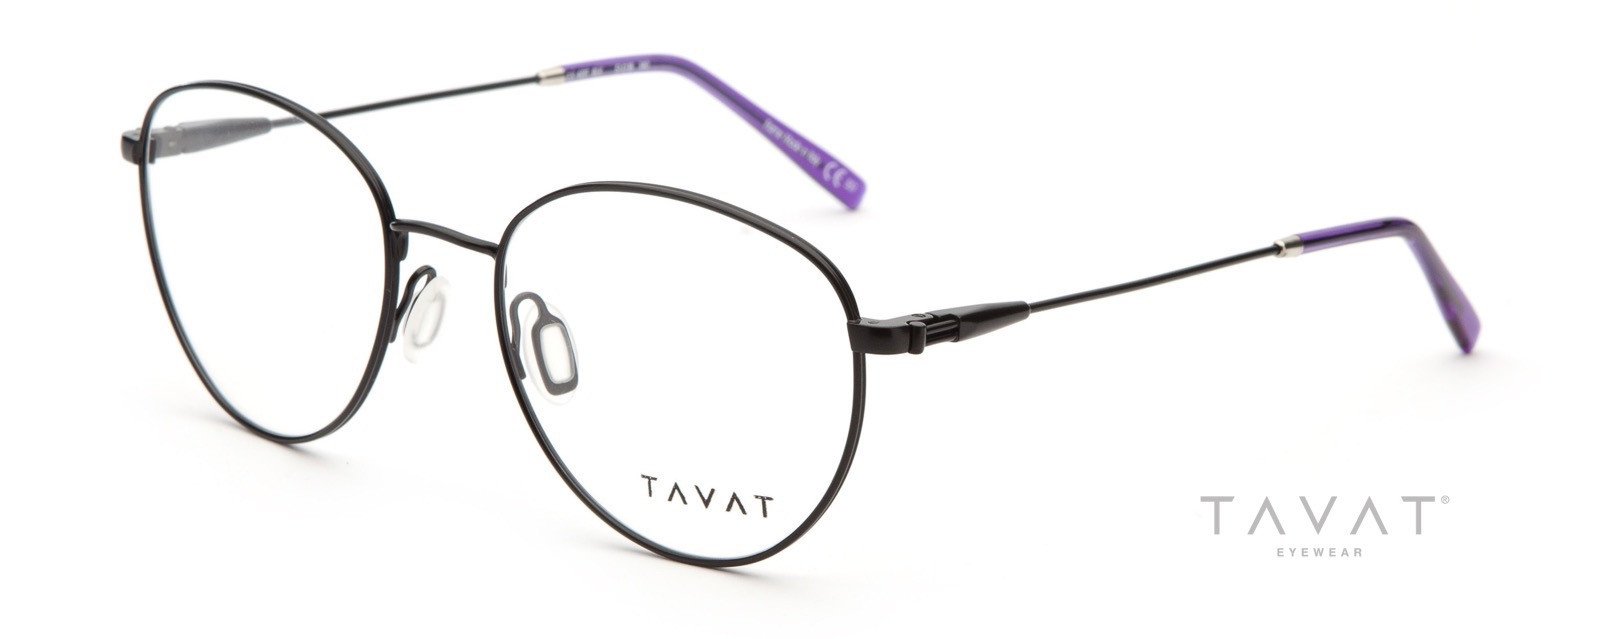 Alexander Daas - Tavat Owain EX401T Eyeglasses - Black Satin - Side View